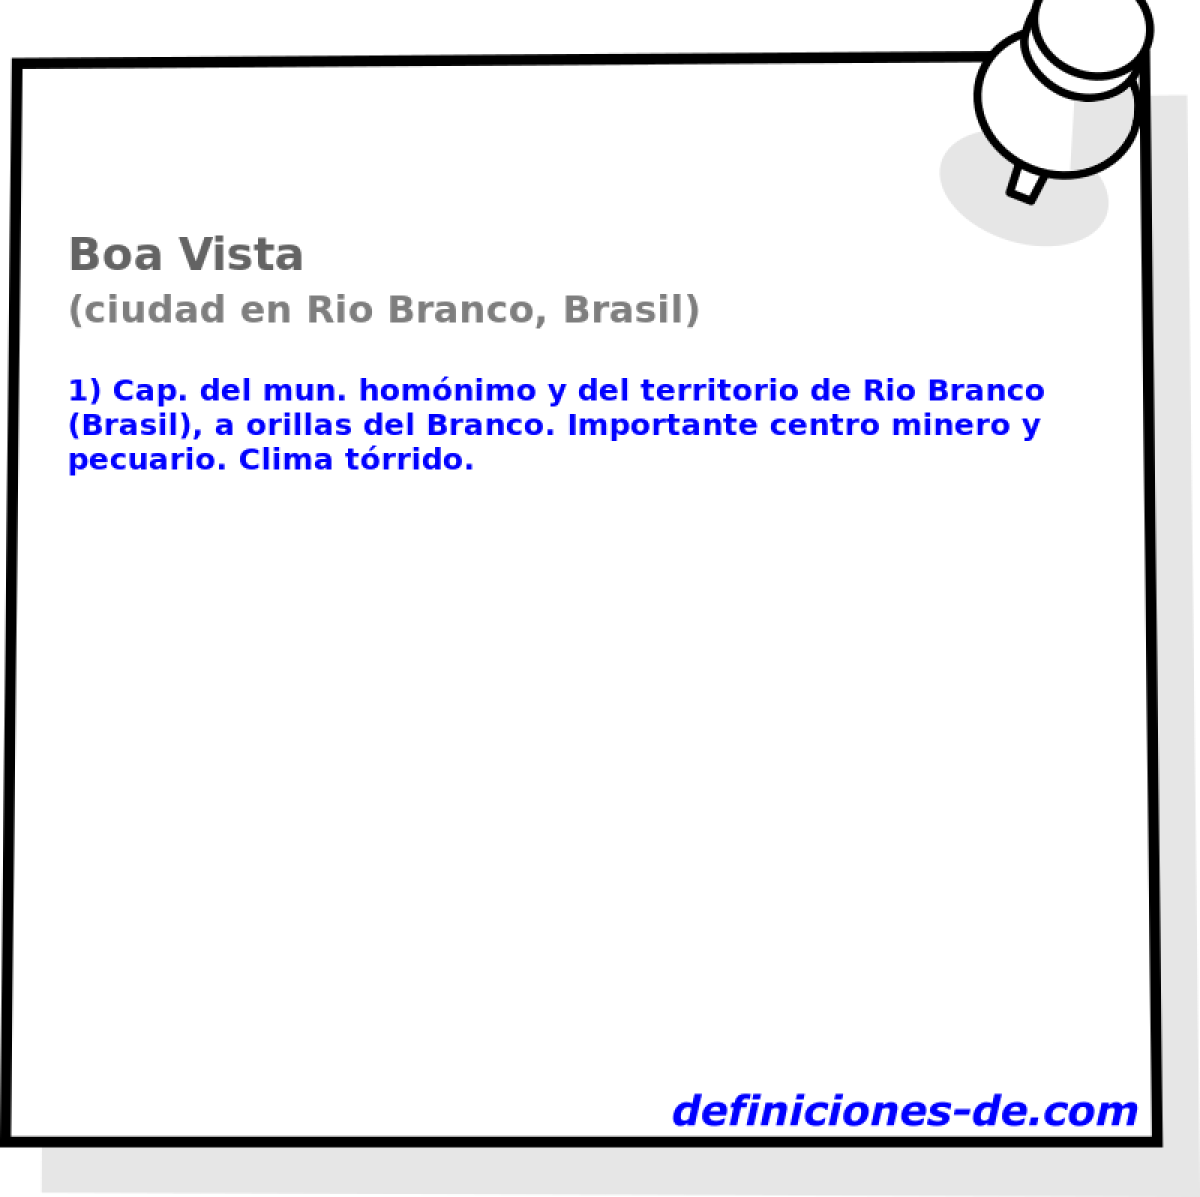 Boa Vista (ciudad en Rio Branco, Brasil)